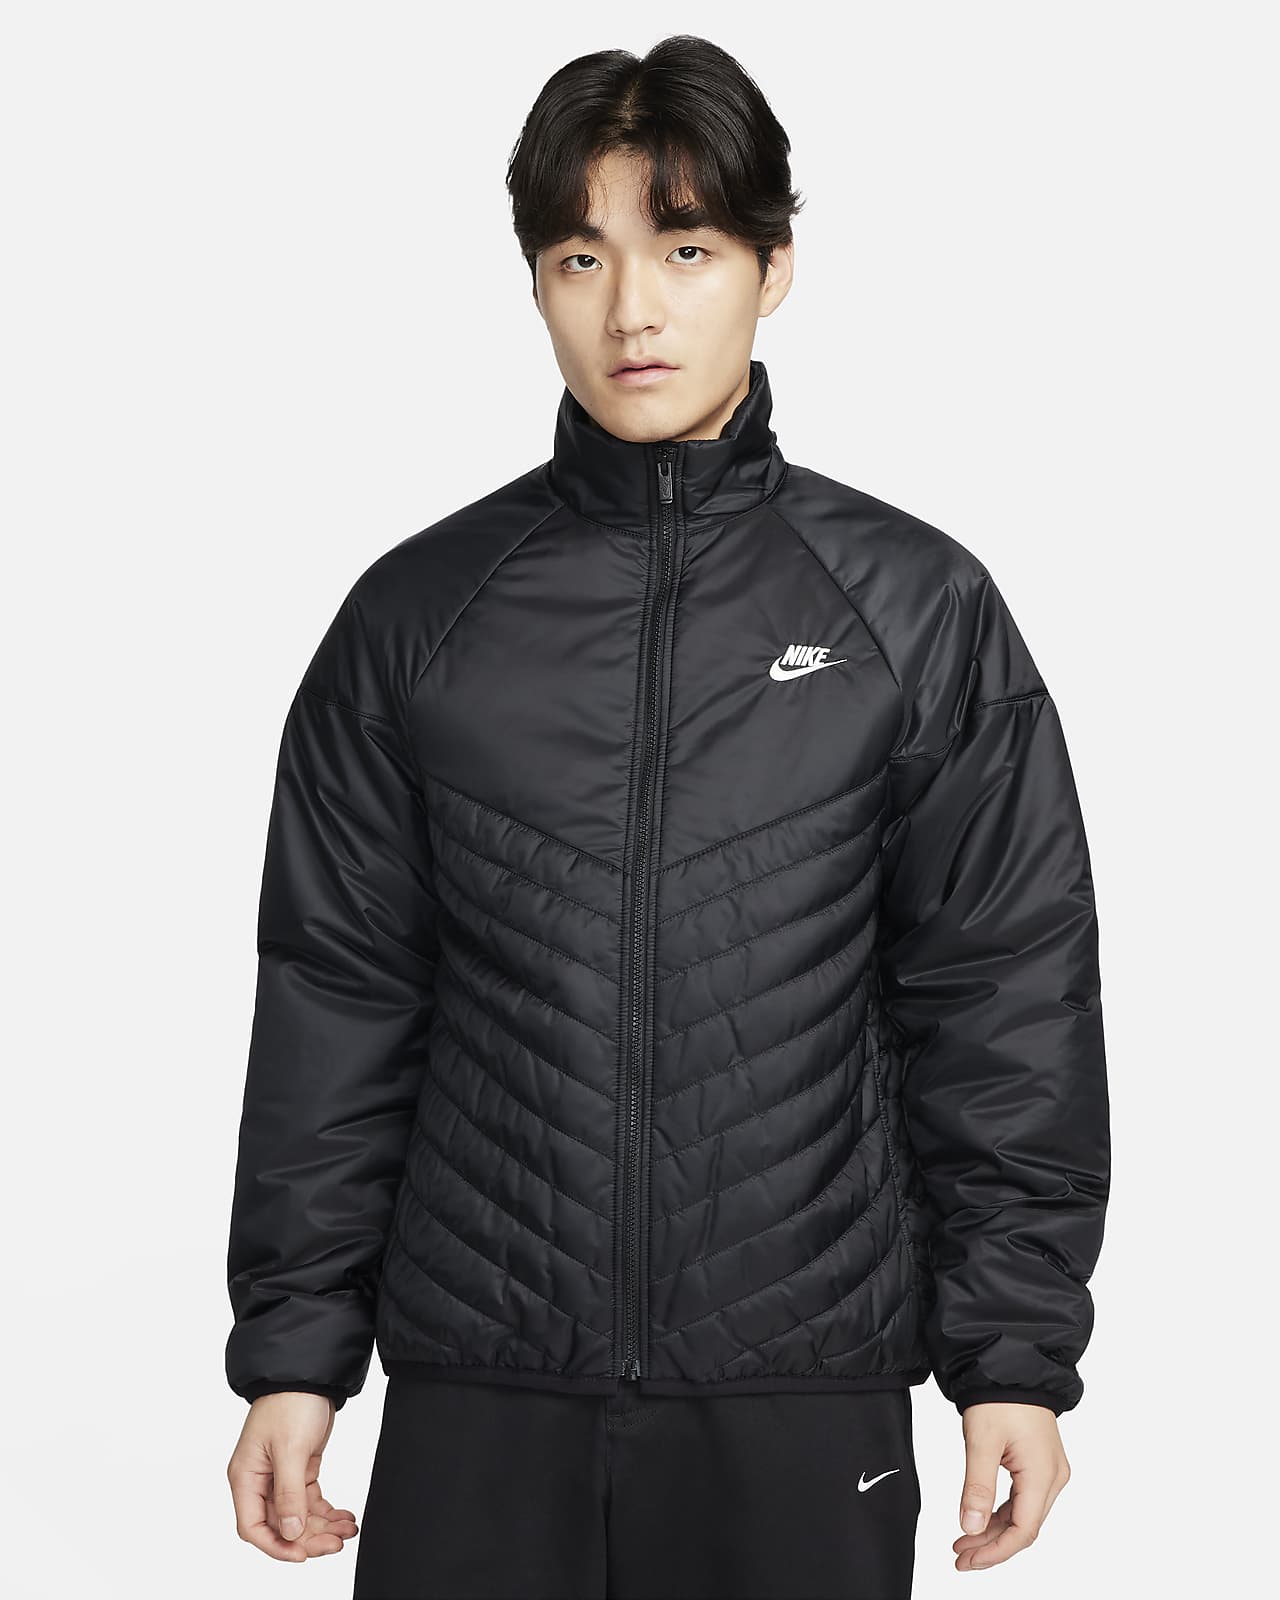 Black Sportswear Therma-FIT Jacket by Nike on Sale